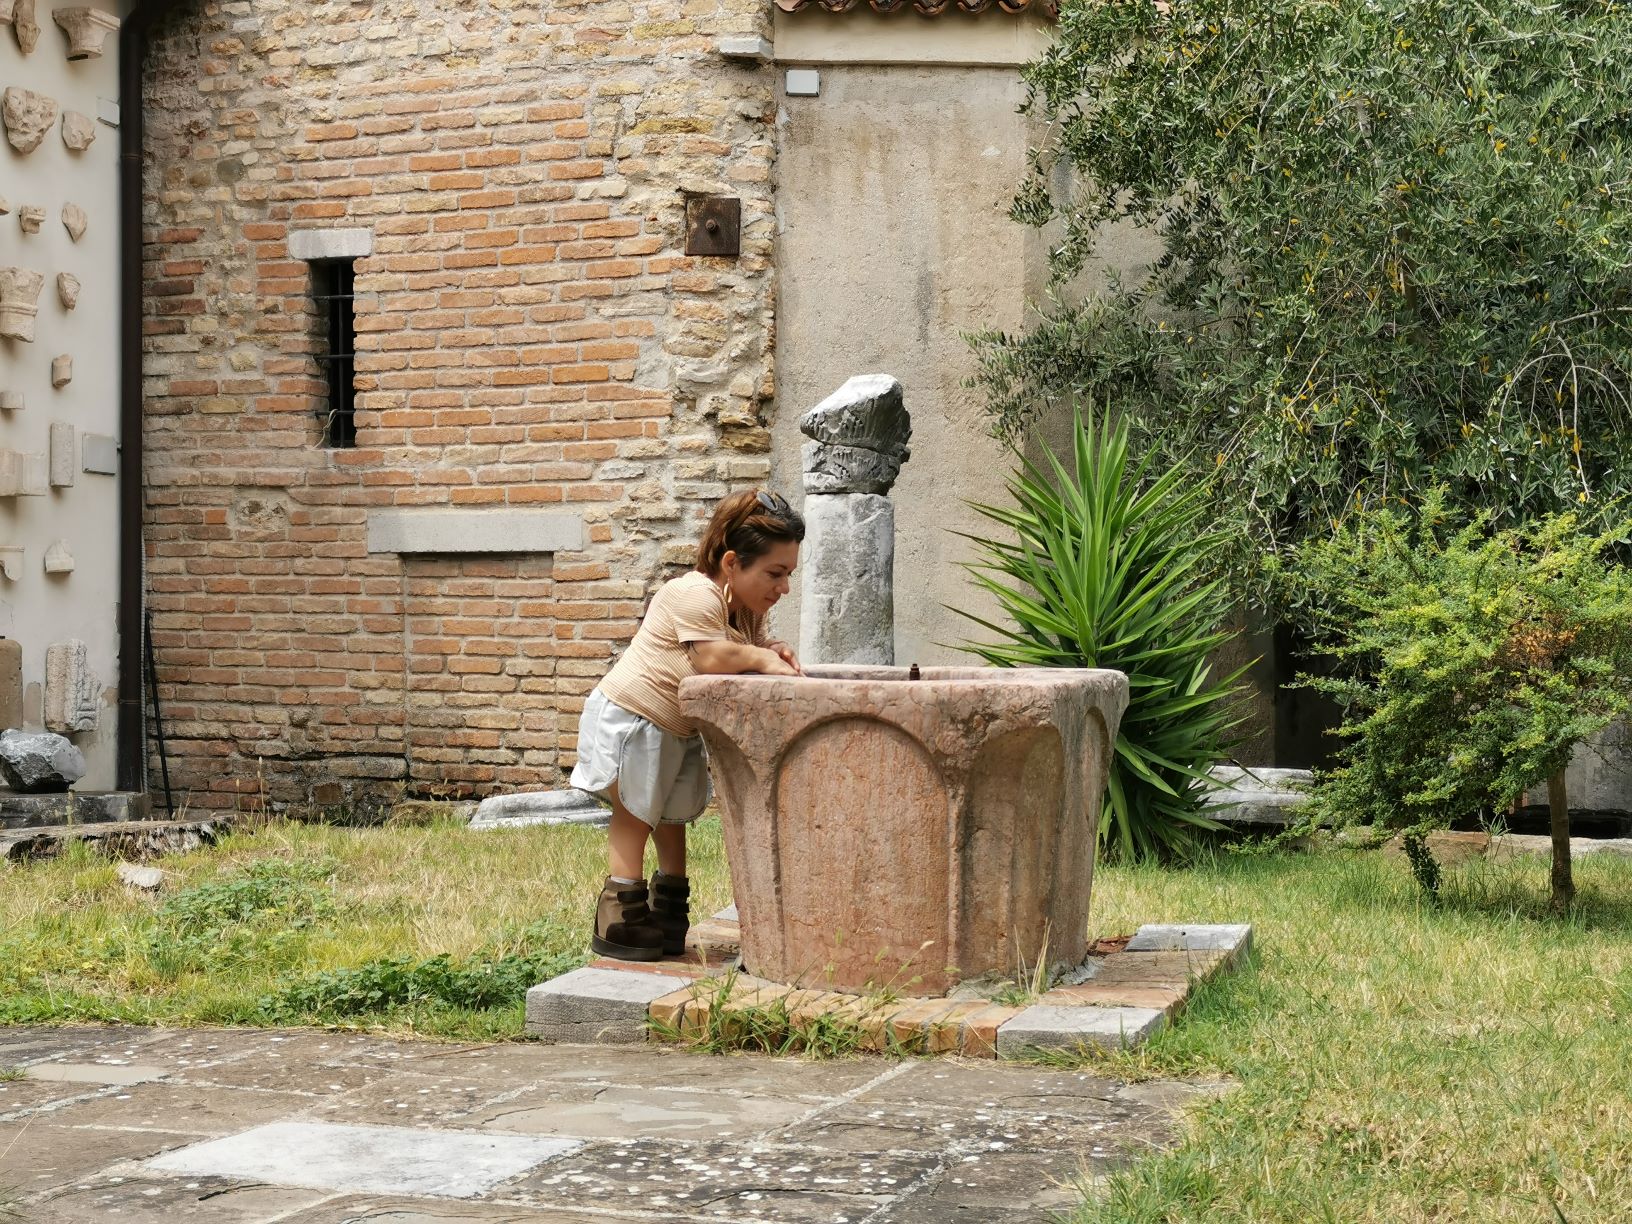 Nanabianca si sporge verso un pozzo di marmo, Lapidario della Basilica di Grado